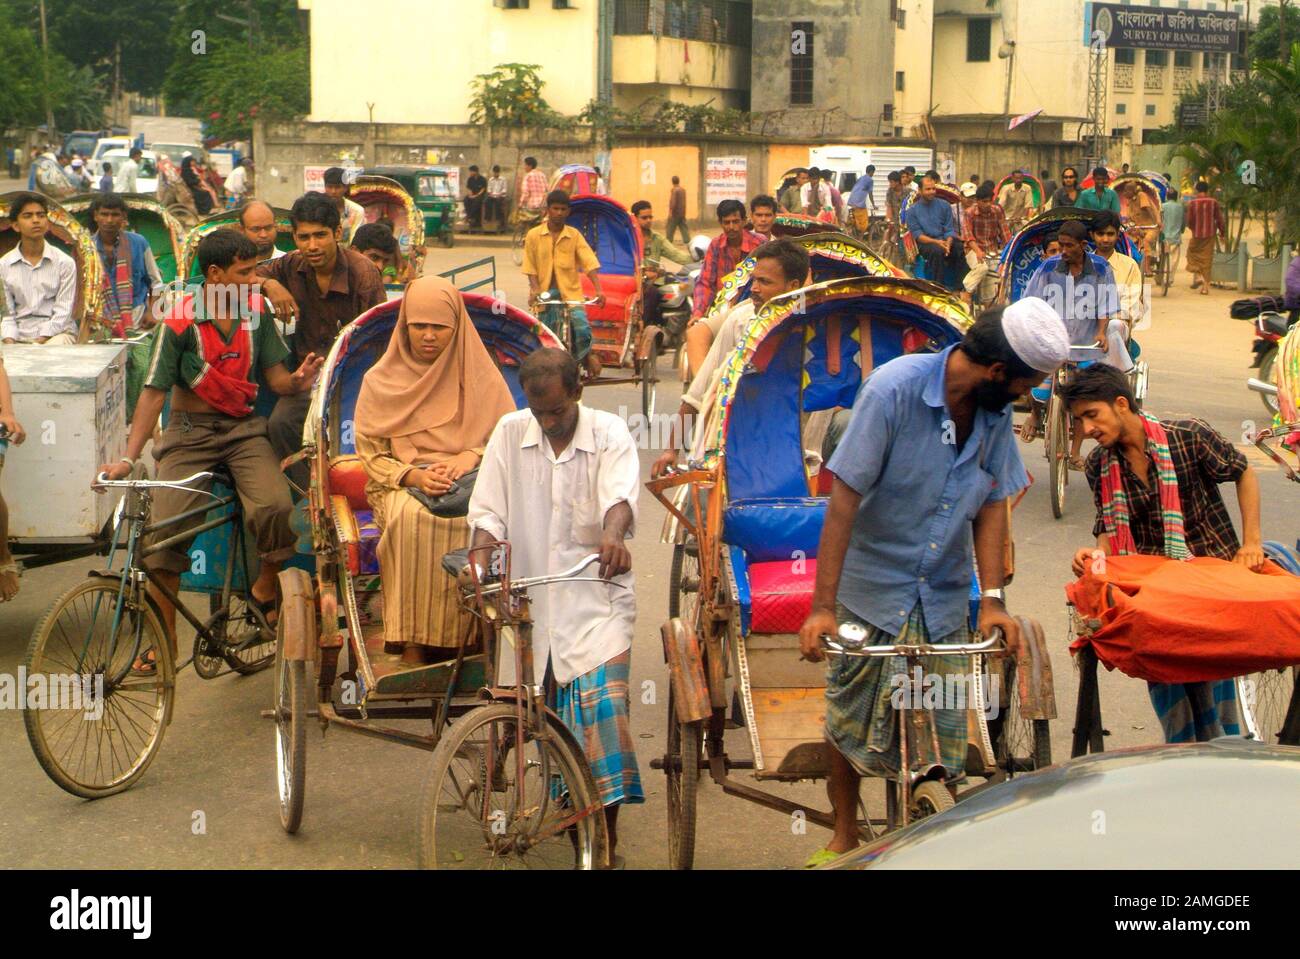 Dhaka, Bangladesch - 17. September 2007: Nicht identifizierte Menschen auf traditionellen Rikschas, billige übliche Verkehrsmittel Stockfoto